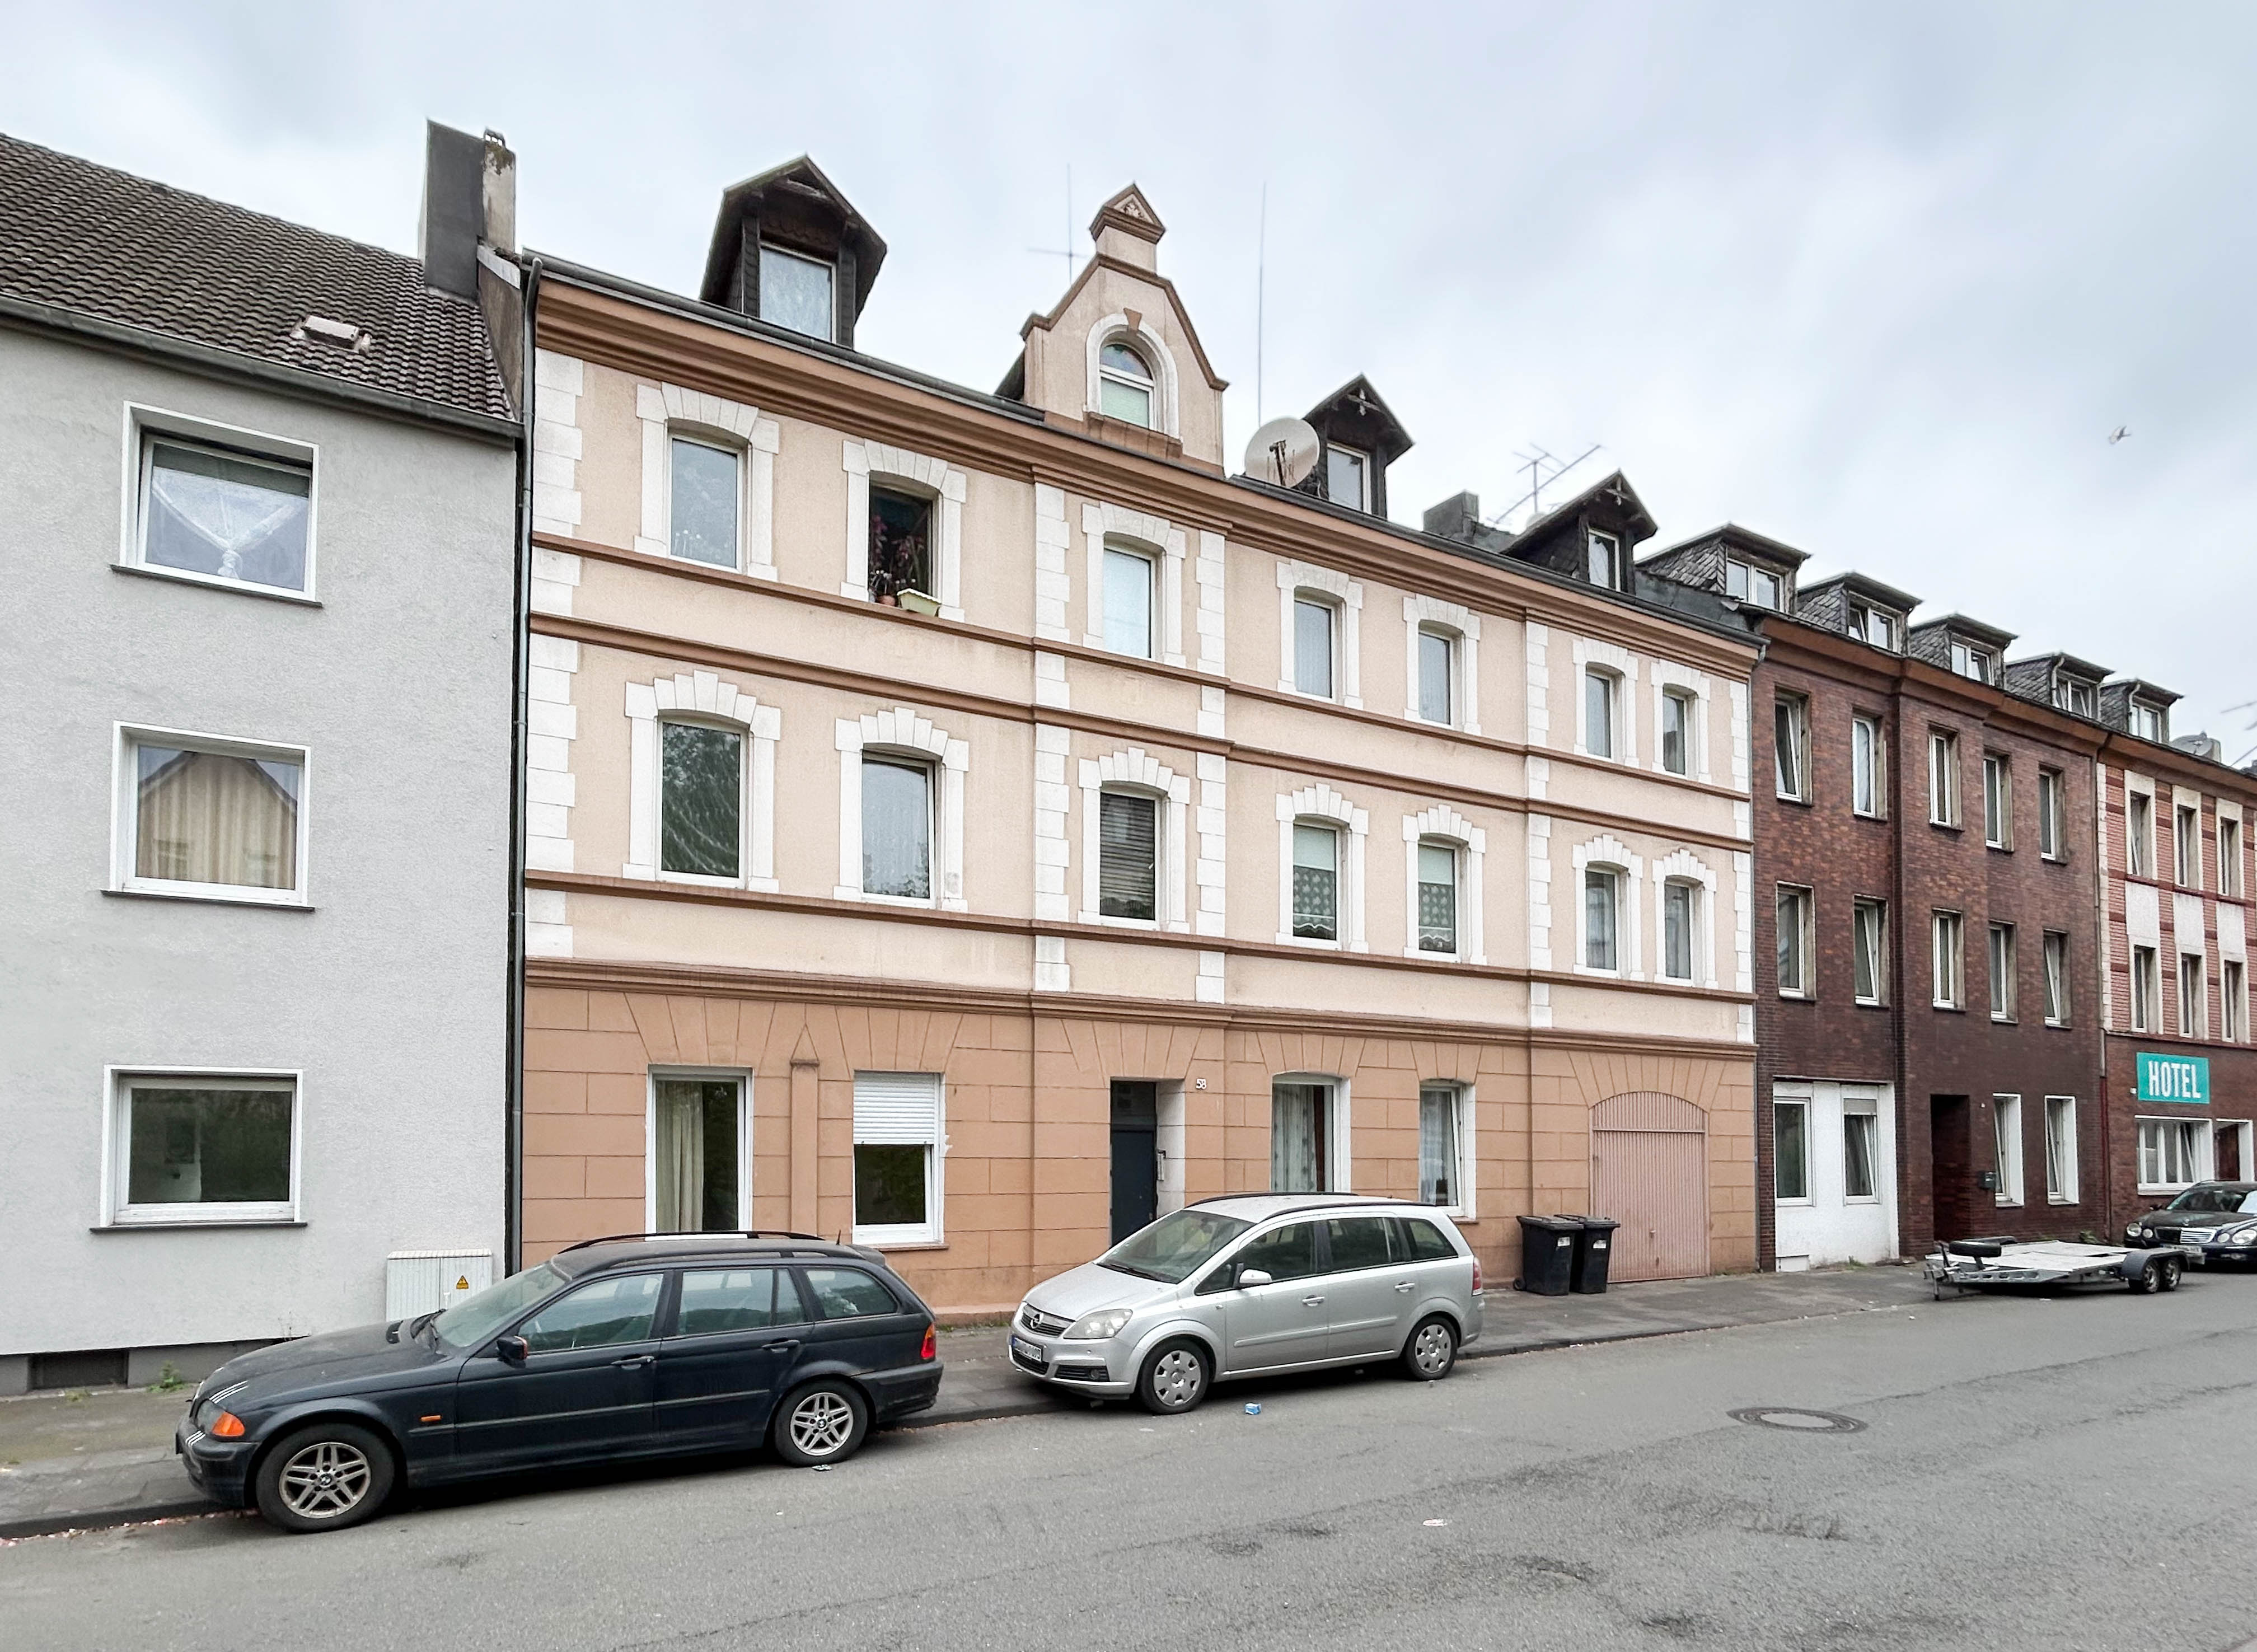 Immobilienmakler 1 - Verkauf Wohnung in Duisburg